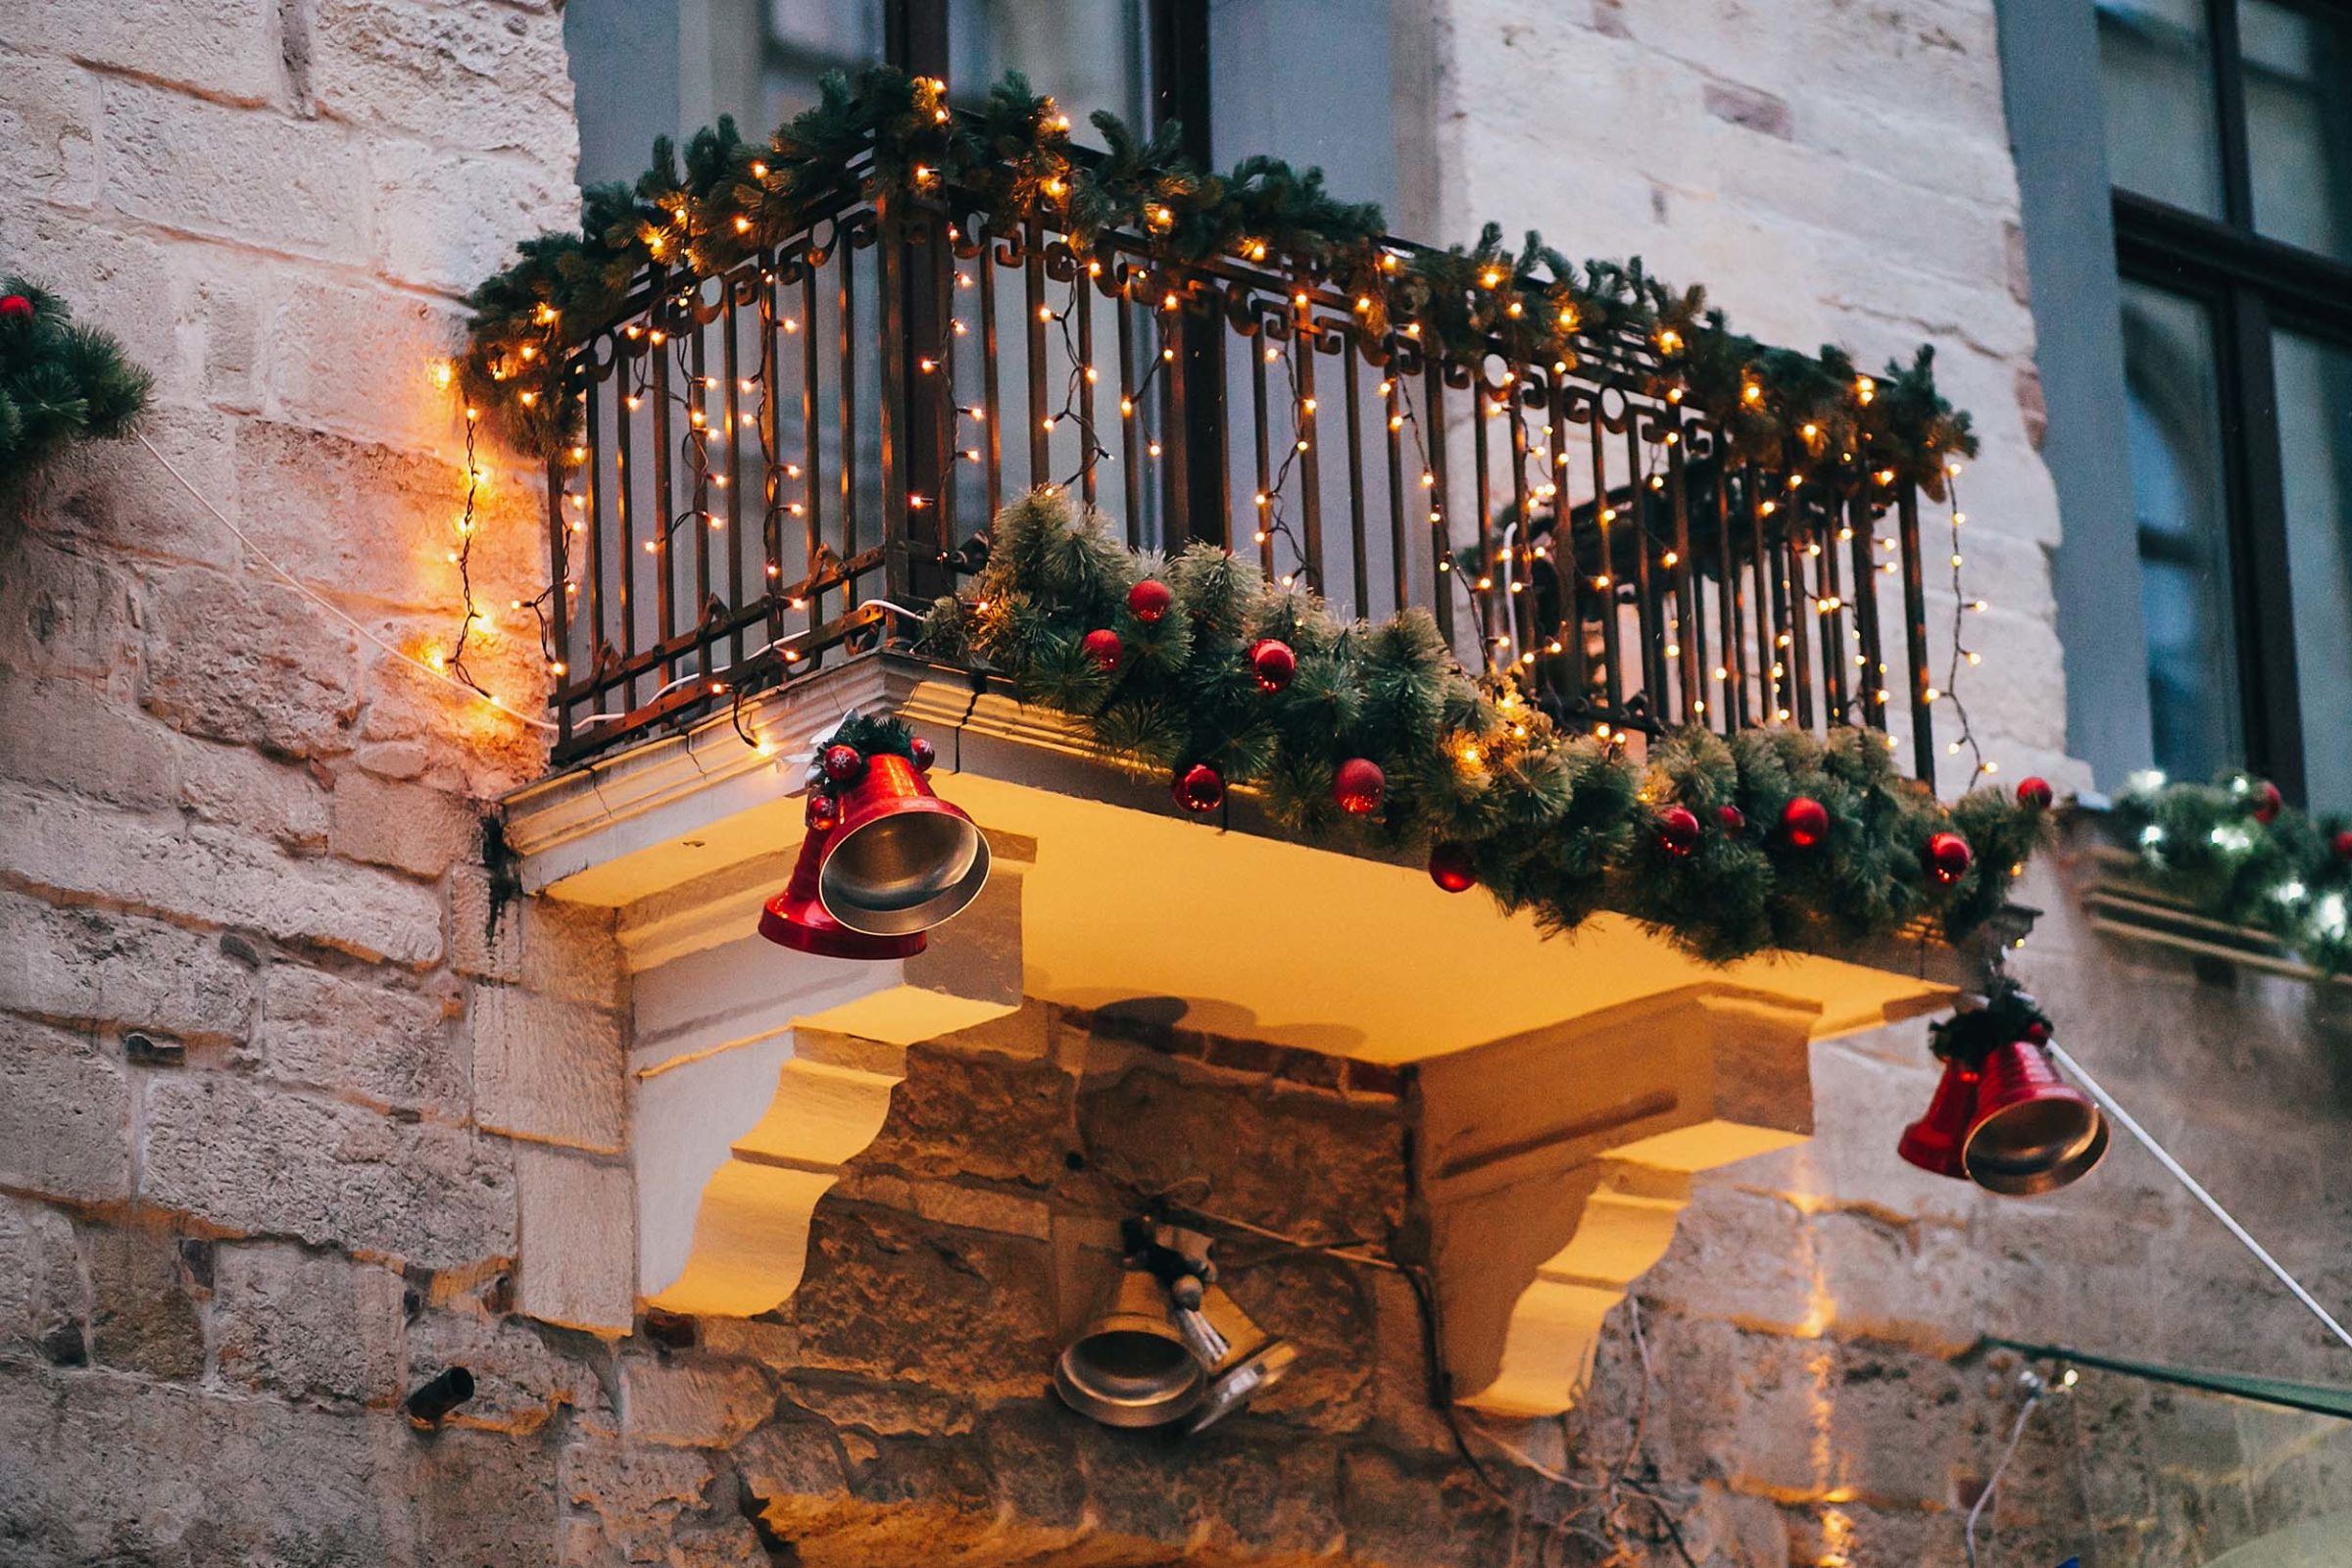 Weihnachtlich geschmueckter Balkon mit Tannengirlanden, Lichterketten und roten Christbaumkugeln. An den aeusseren Ecken das Balkons haengen jeweils zwei rote grosse Glocken. Mittig unter dem Balkon haengen zwei silberne Glocken. Die Abenddaemmerung setzt ein und die Lichterketten sind an.